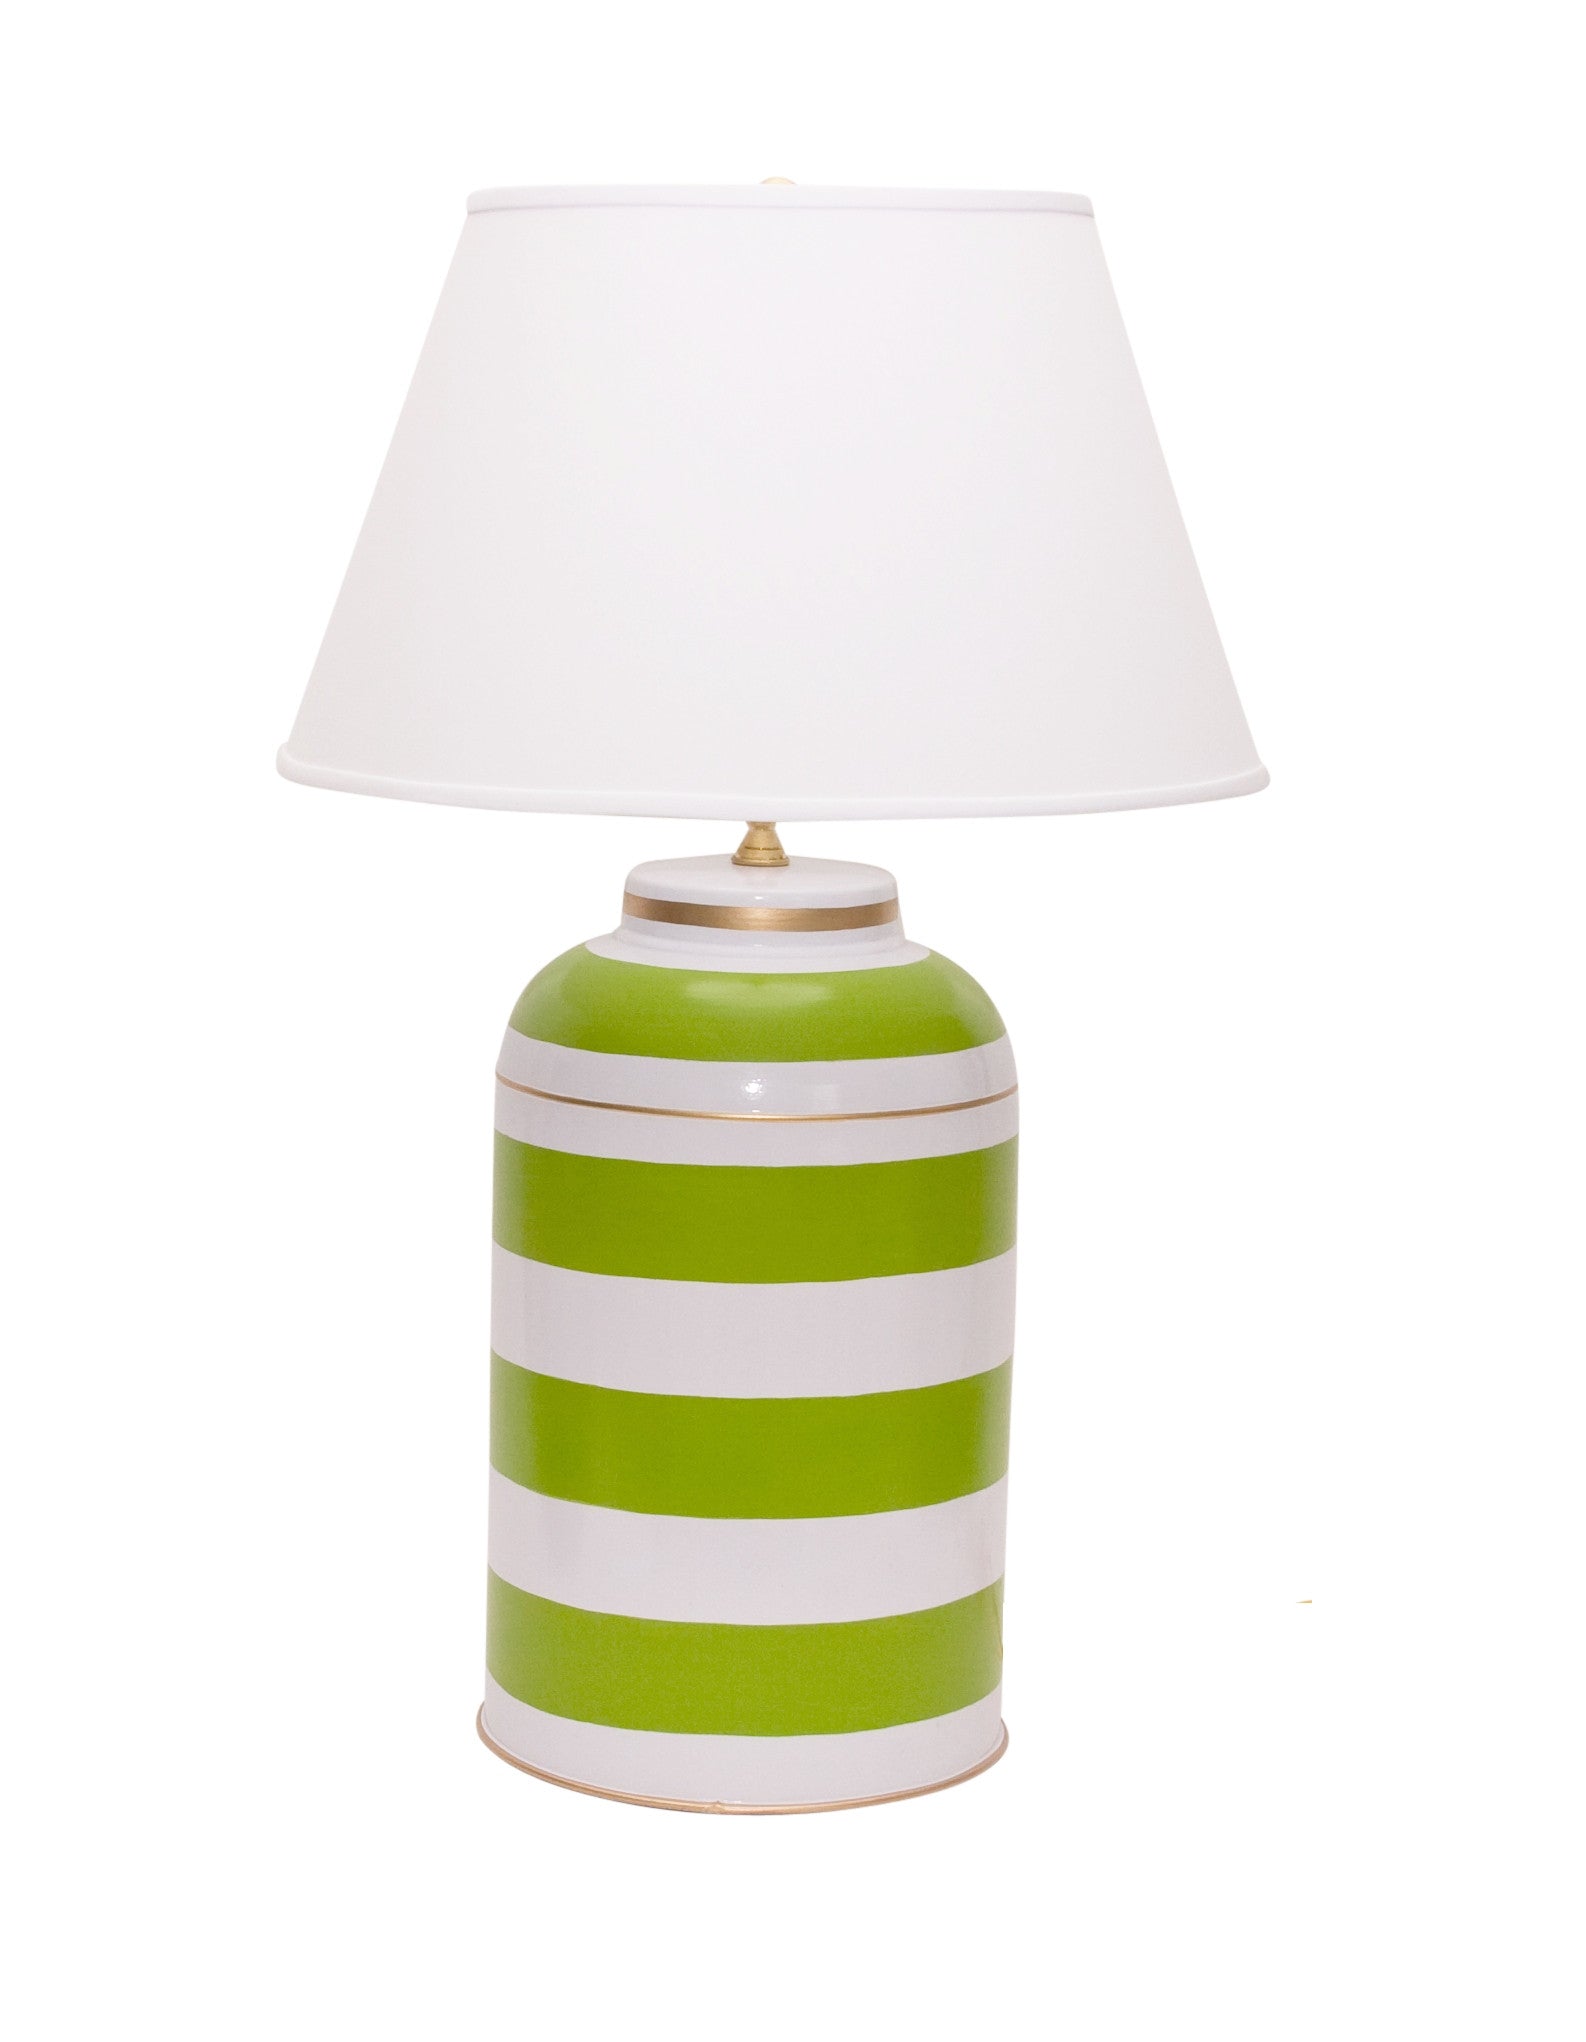 Dana Gibson Green Stripe Tea Caddy Lamp